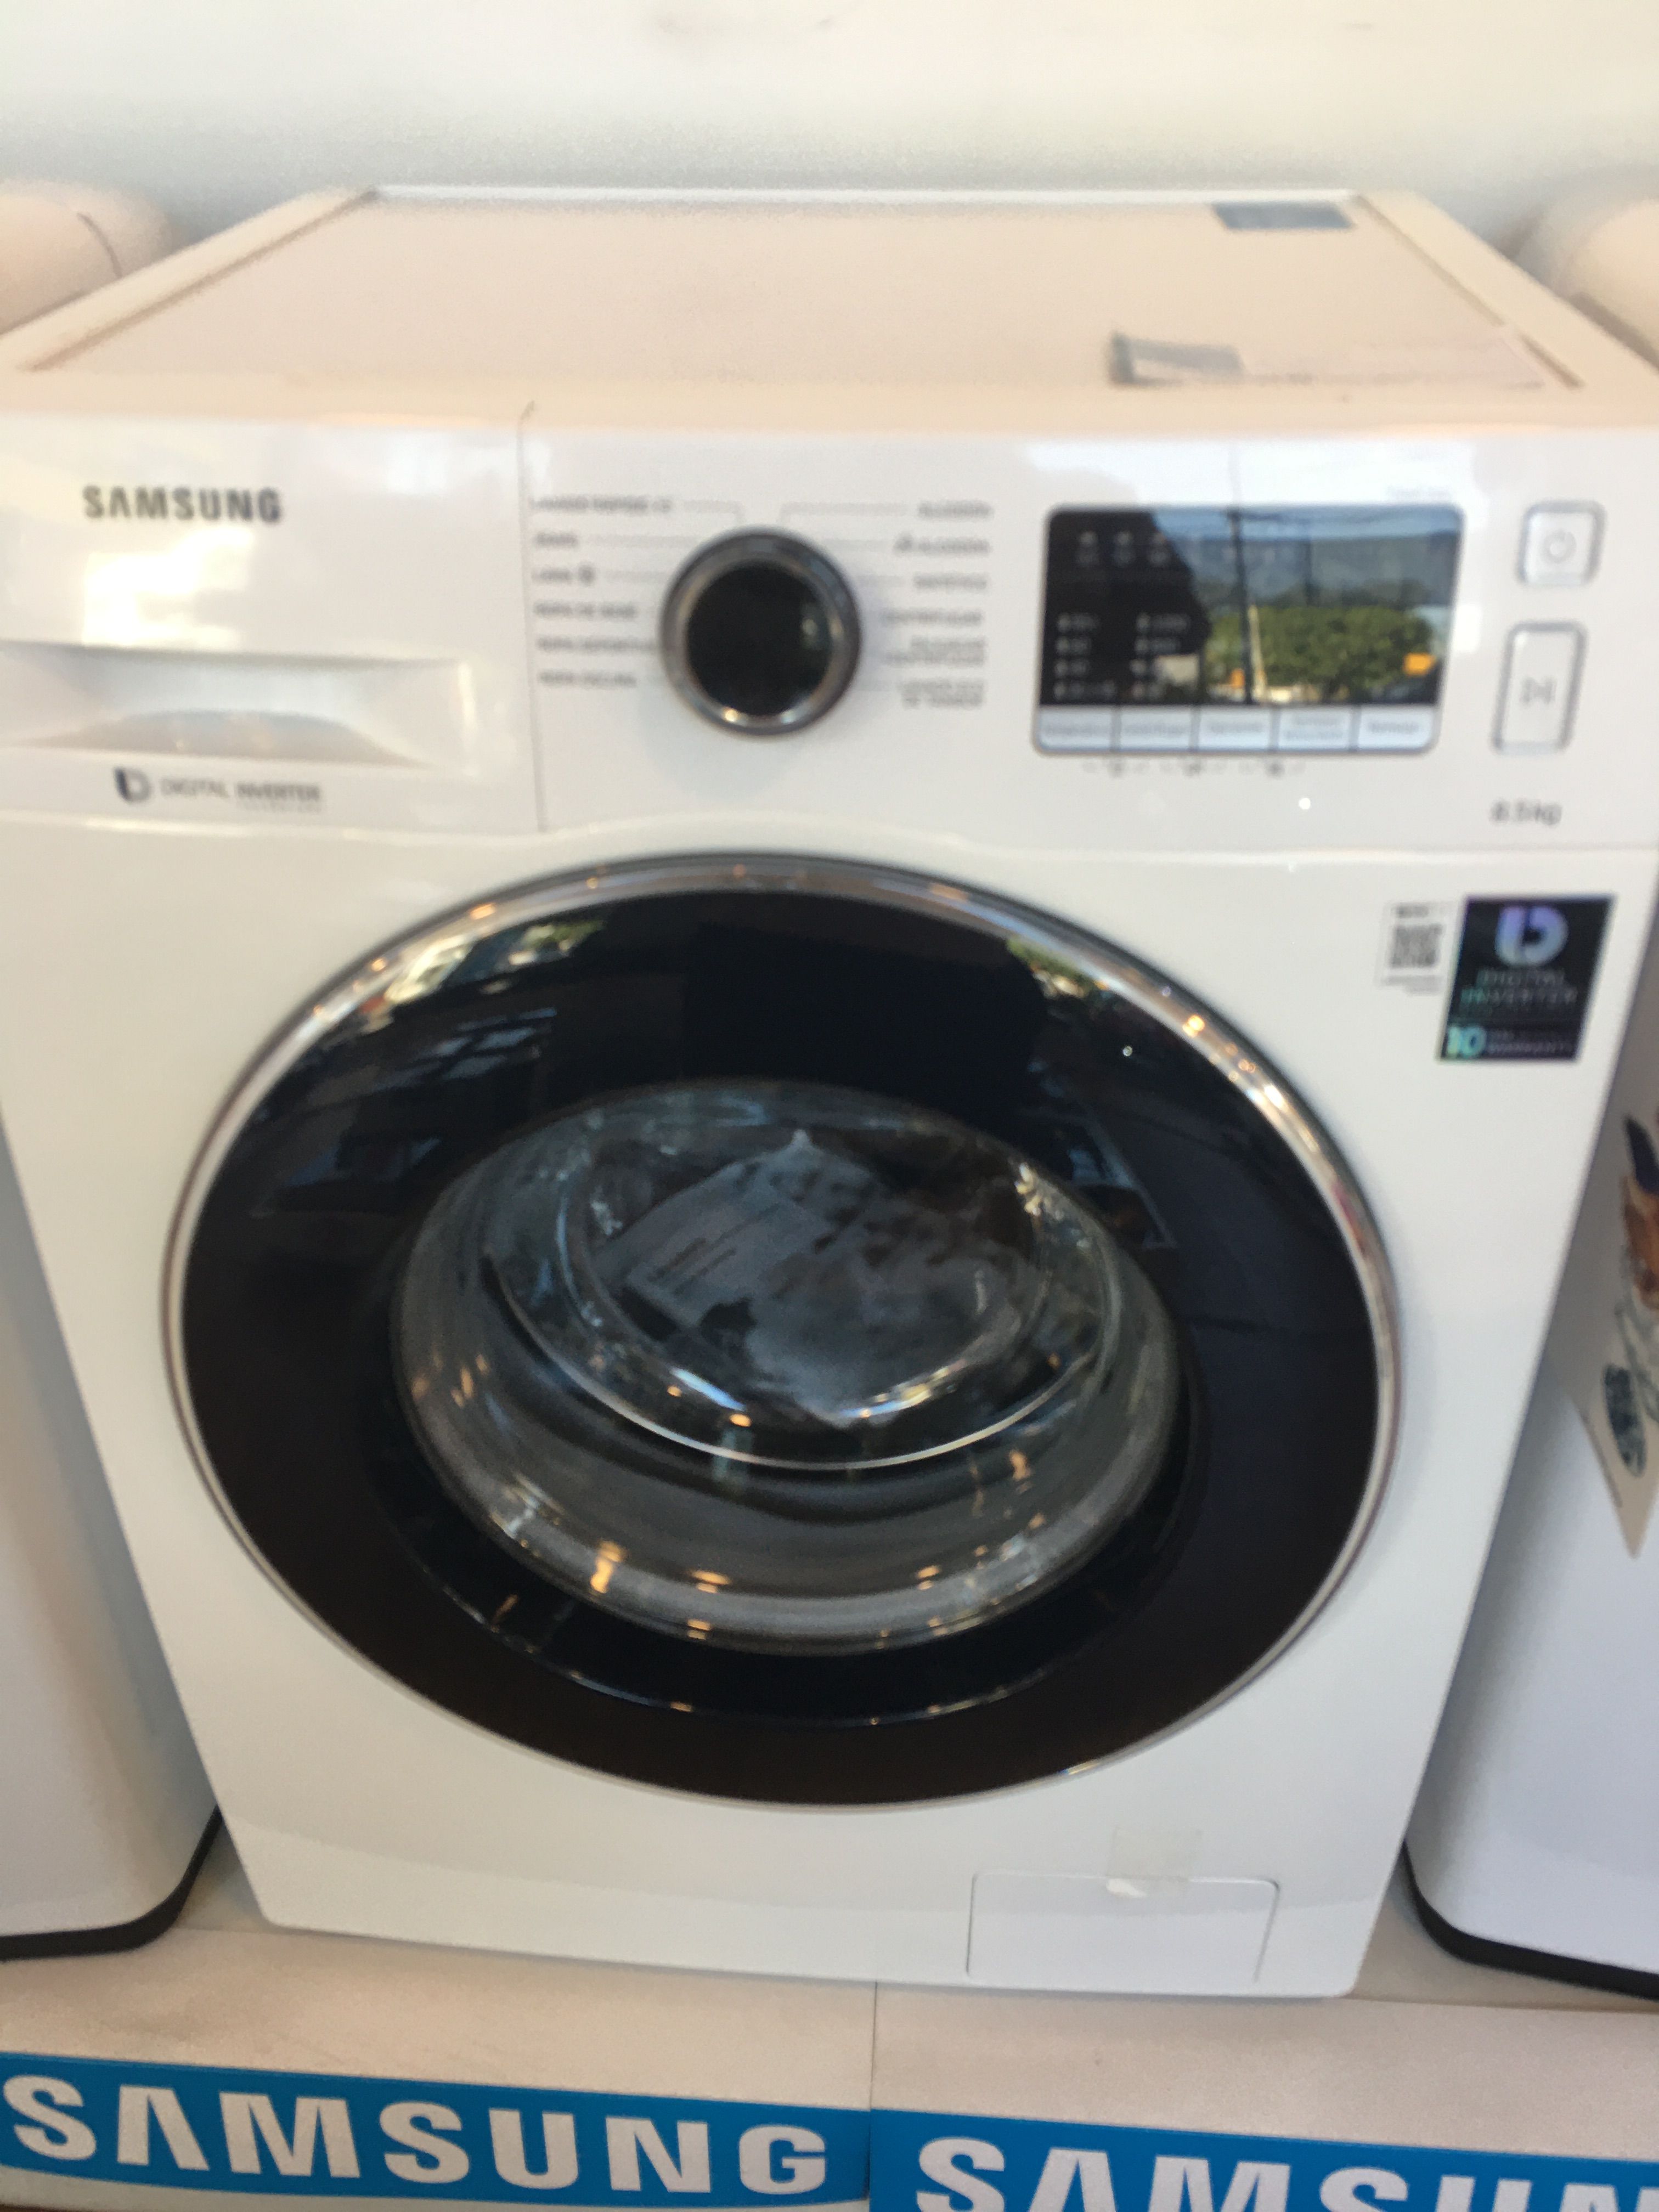 Lavar ropa blanca lavadora eccobubble Cual es programa para lavar ropa blanca? - Samsung Community